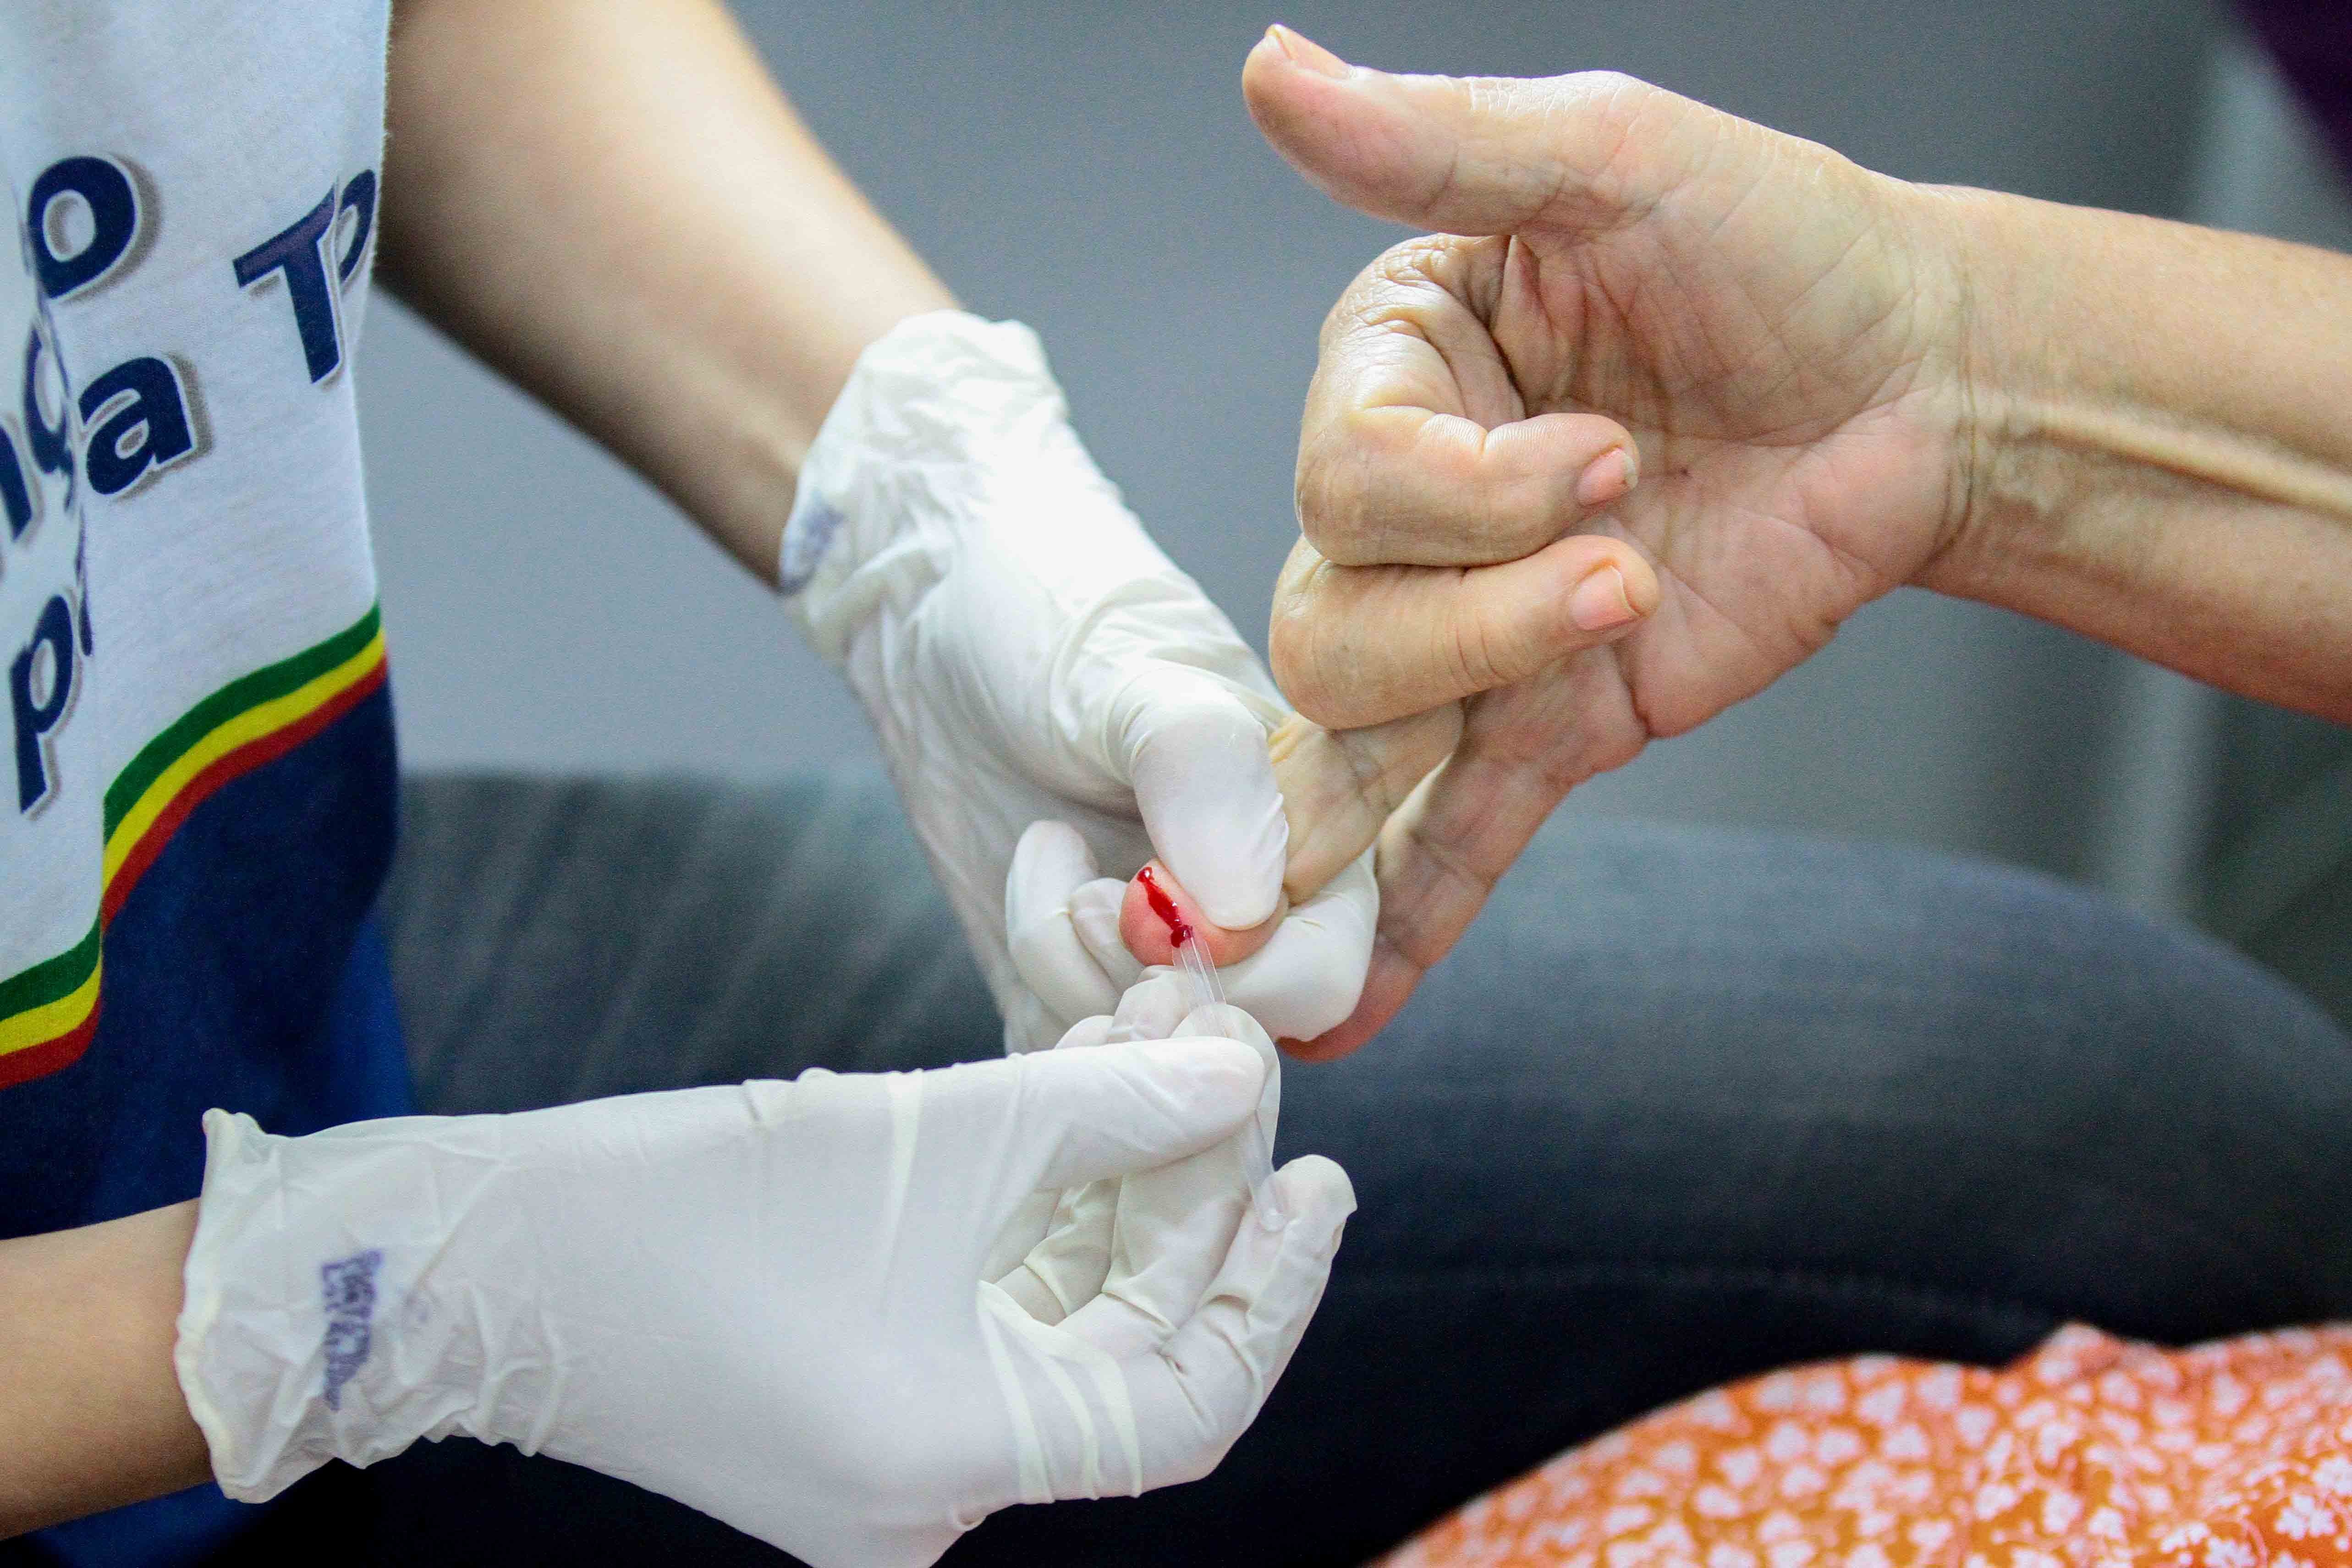 Hepatite em crianças com origem desconhecida tem caso descartado em PE; diagnóstico é de chikungunya